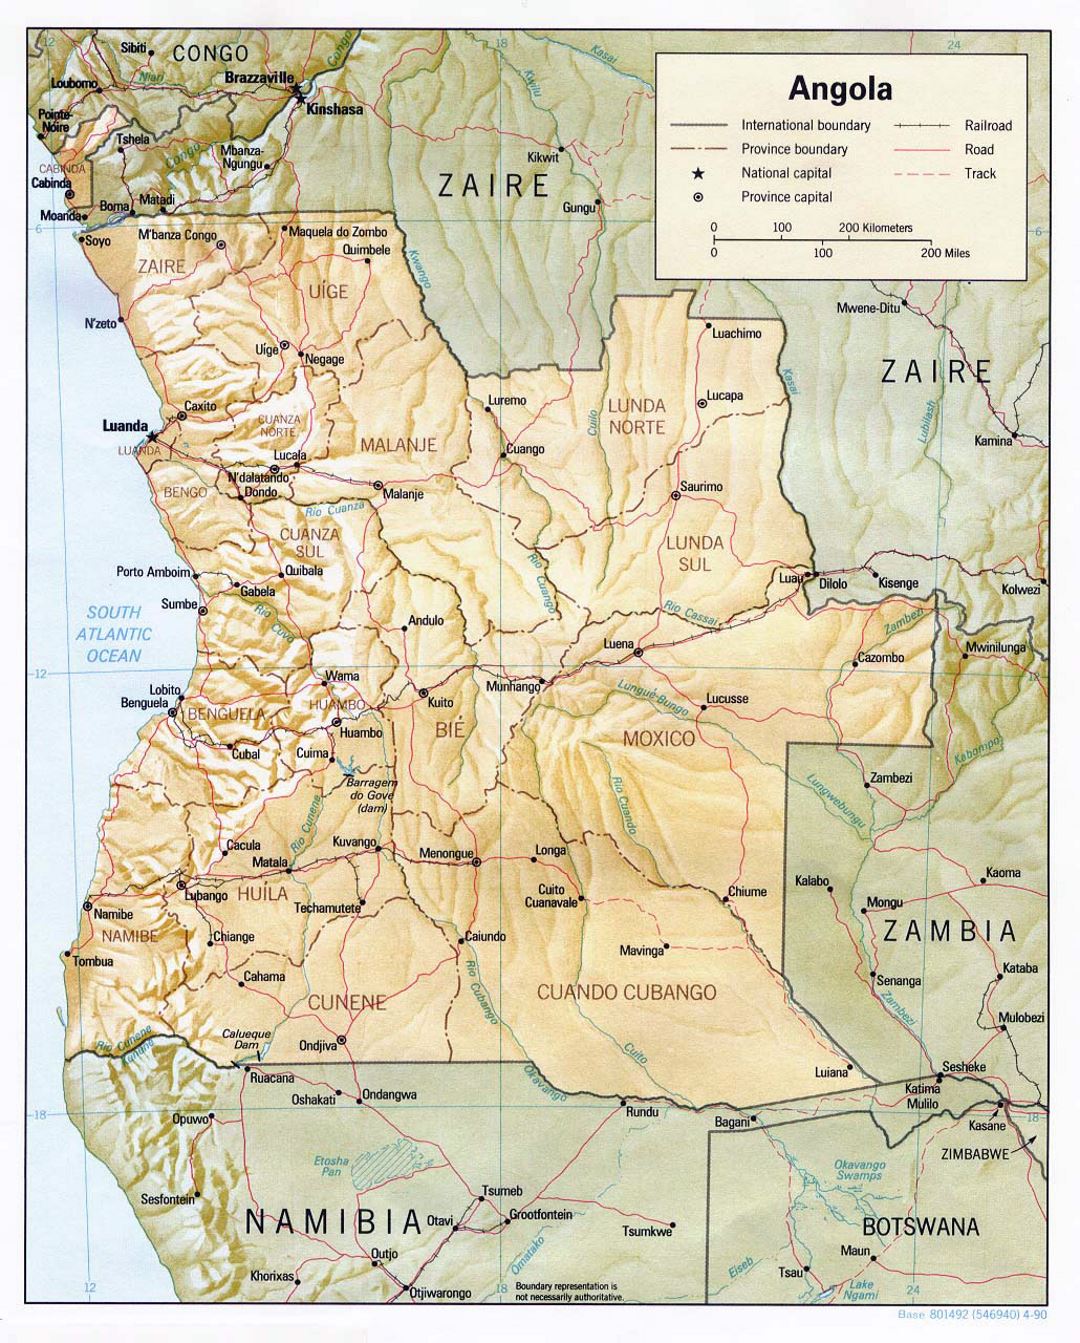 Детальная политическая и административная карта Анголы с рельефом, дорогами, железными дорогами и крупными городами - 1990